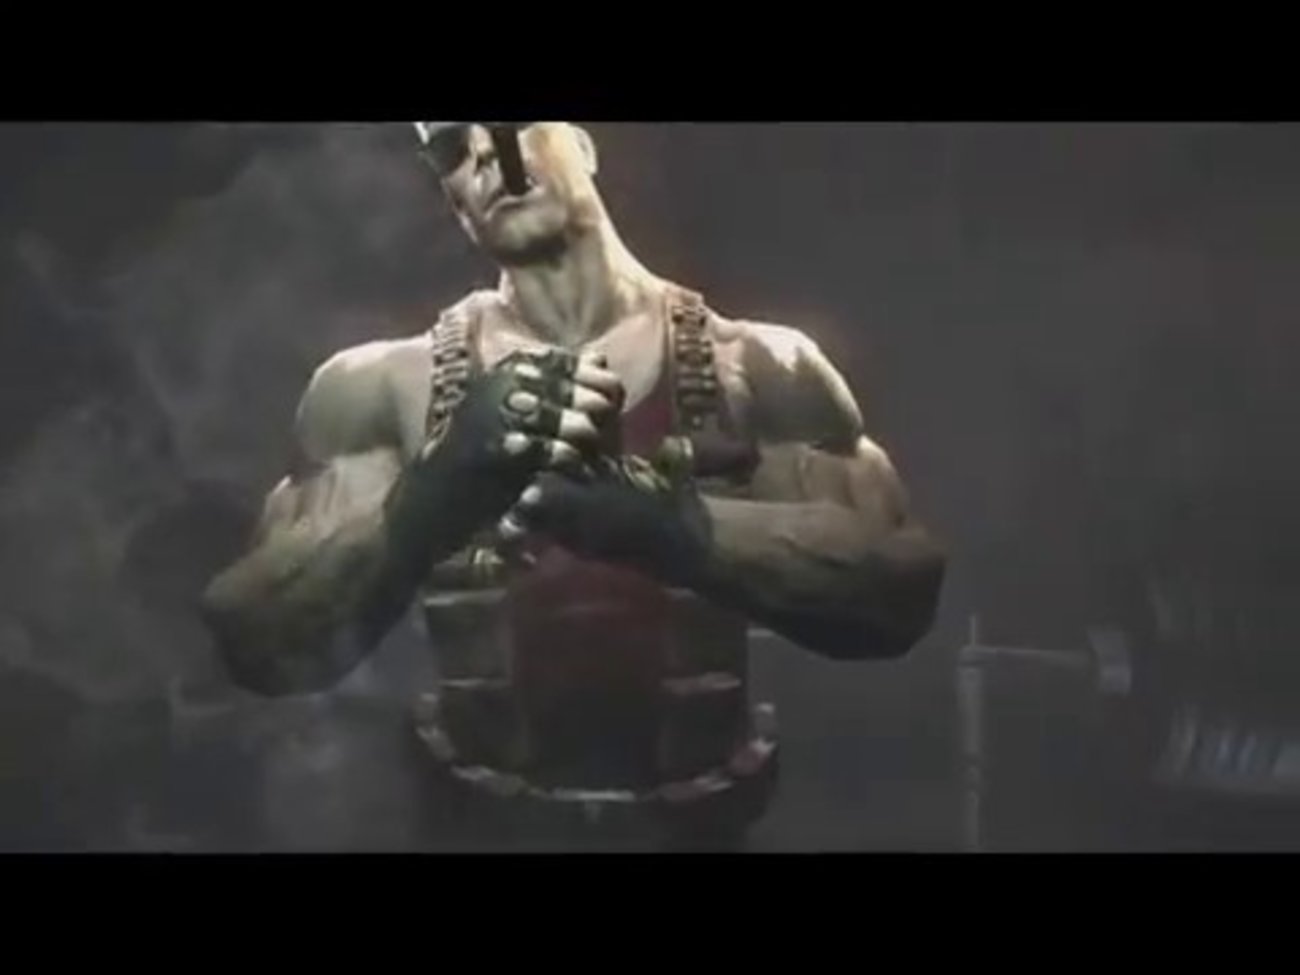 Official Duke Nukem Forever Teaser Video